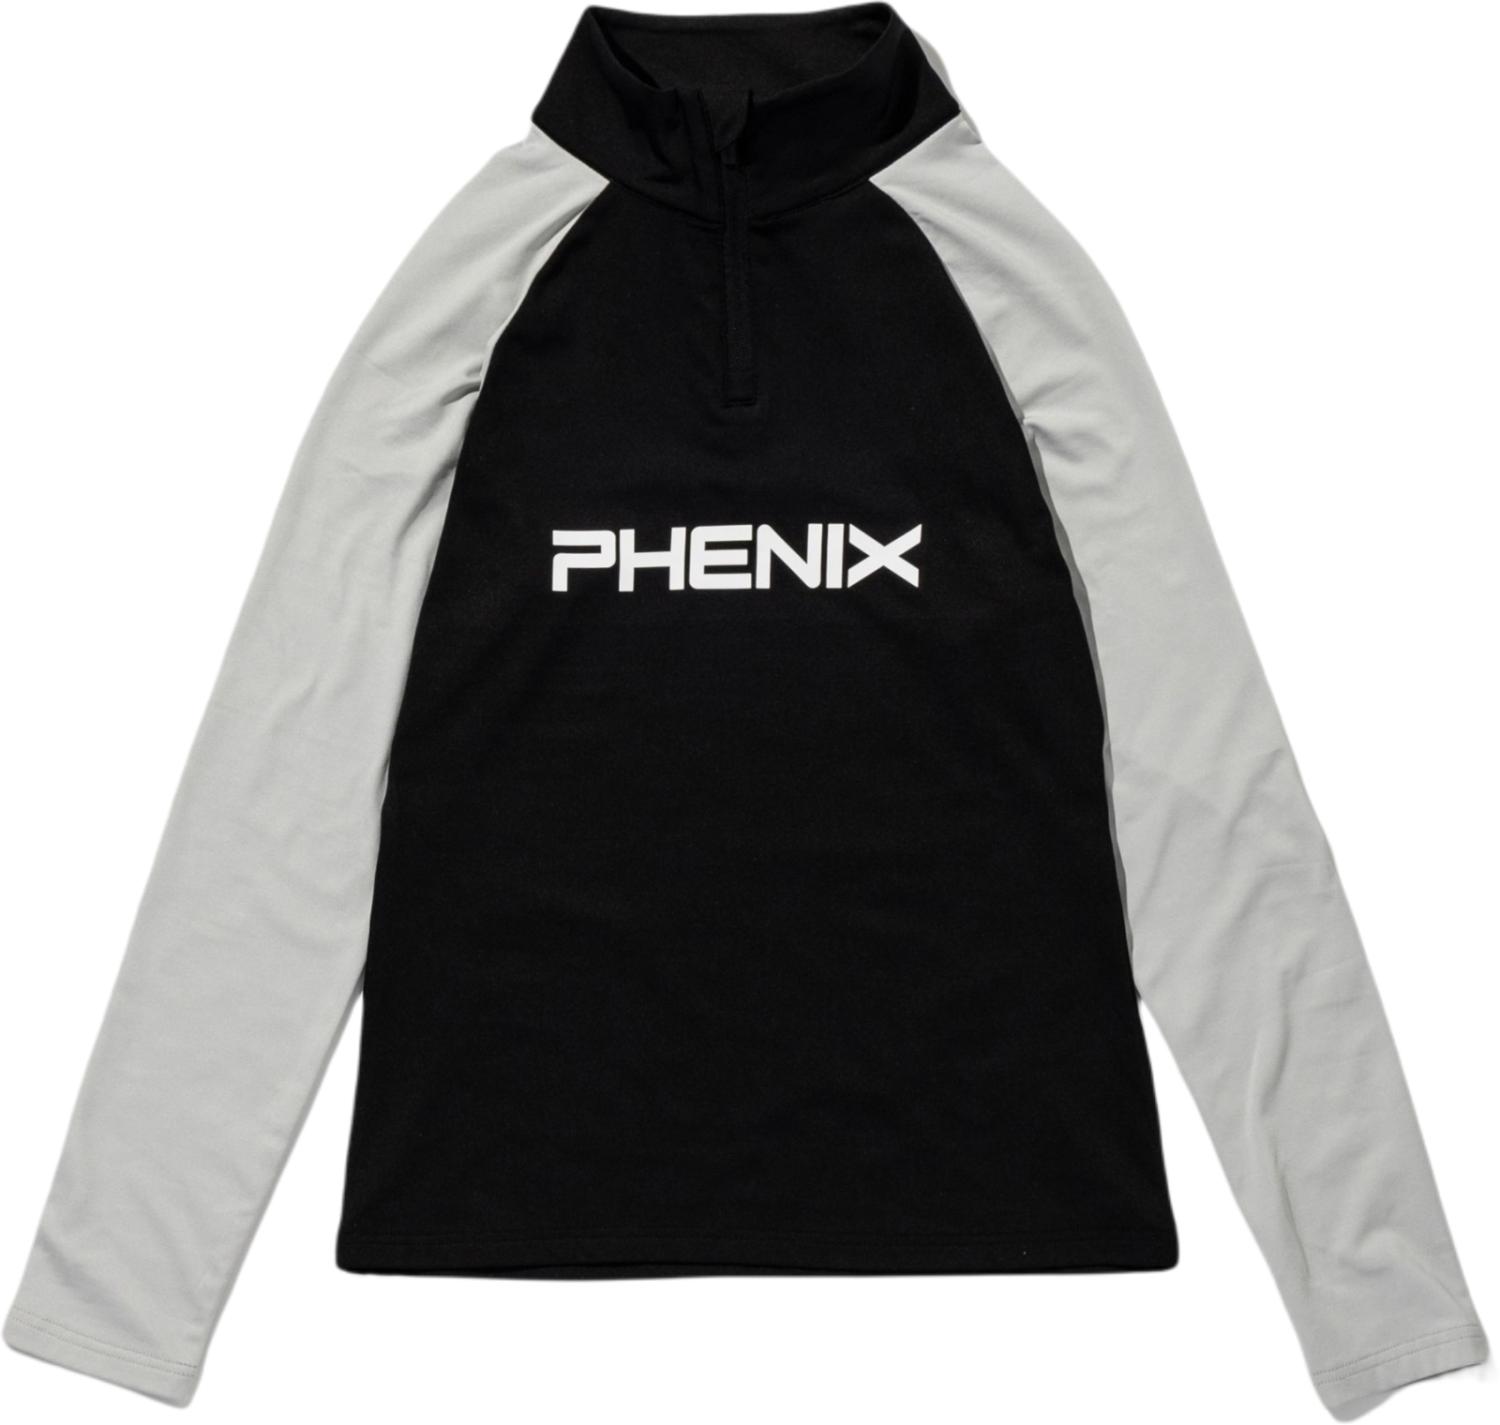  Phenix 22-23 Retro70 1/2 Zip Tee BK